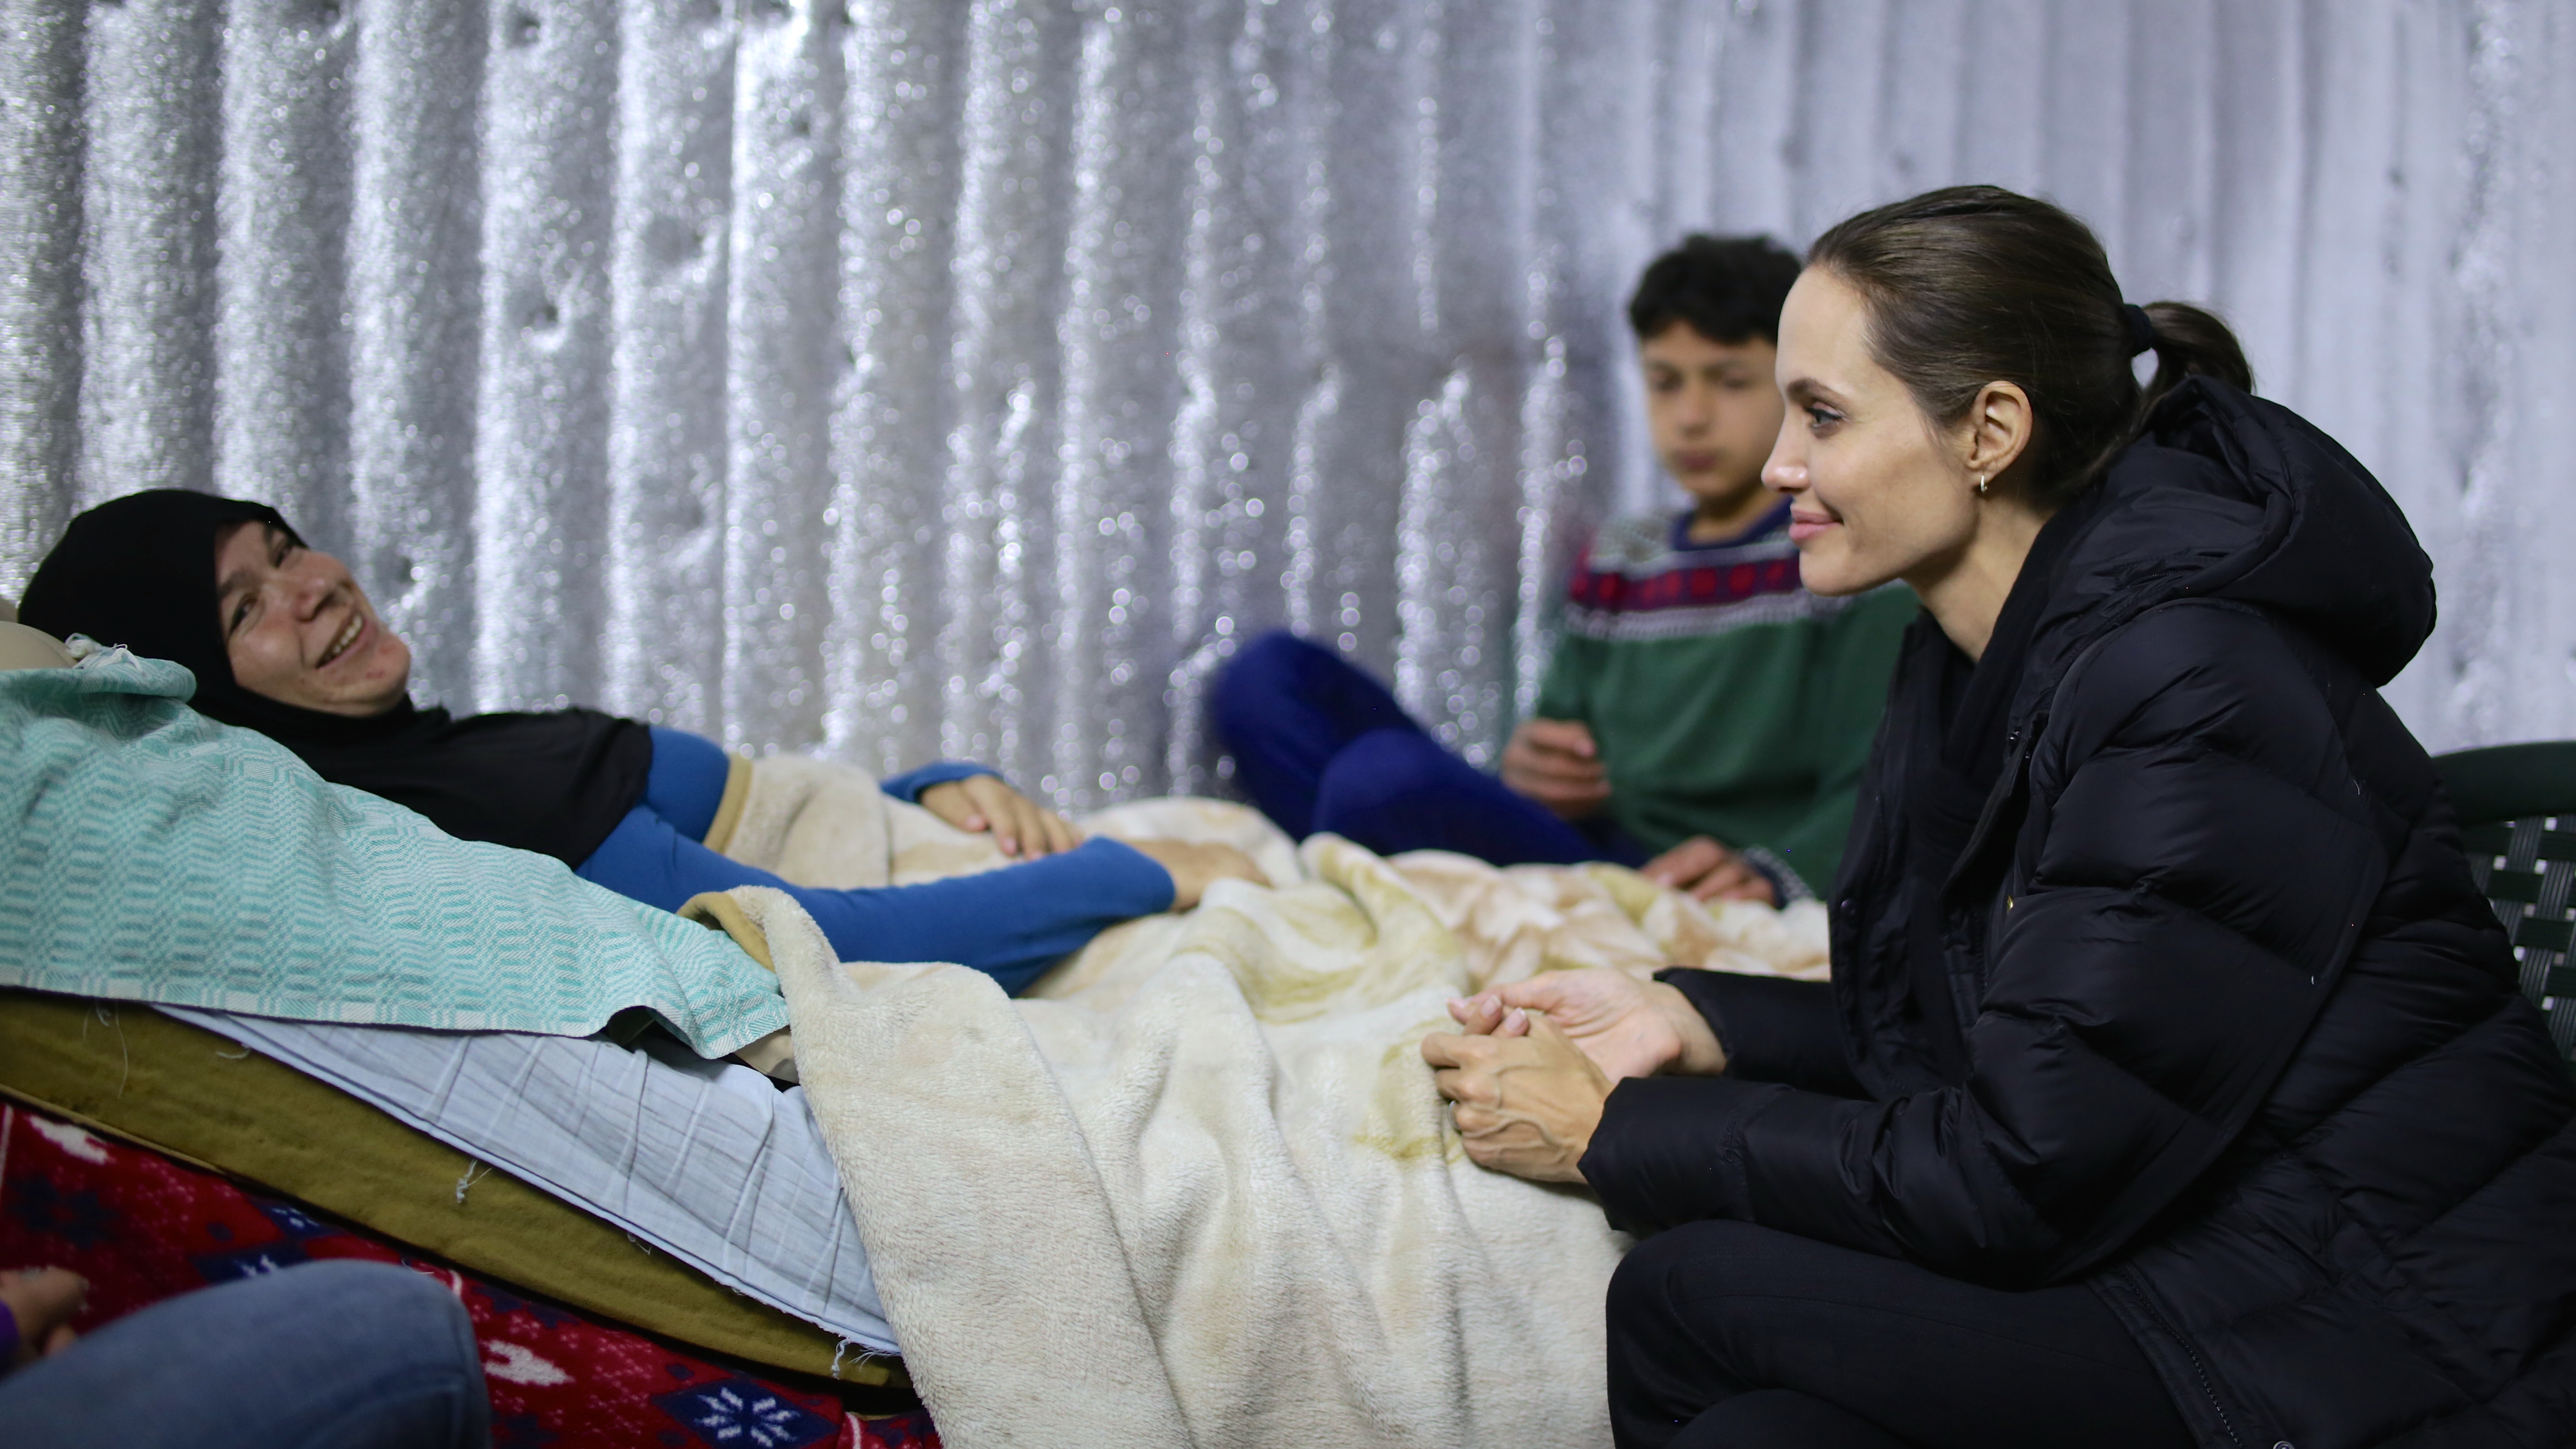 聯合國難民署特使 安祖蓮娜祖莉彼特探訪黎巴嫩的敍利亞難民。© UNHCR/L.Knott